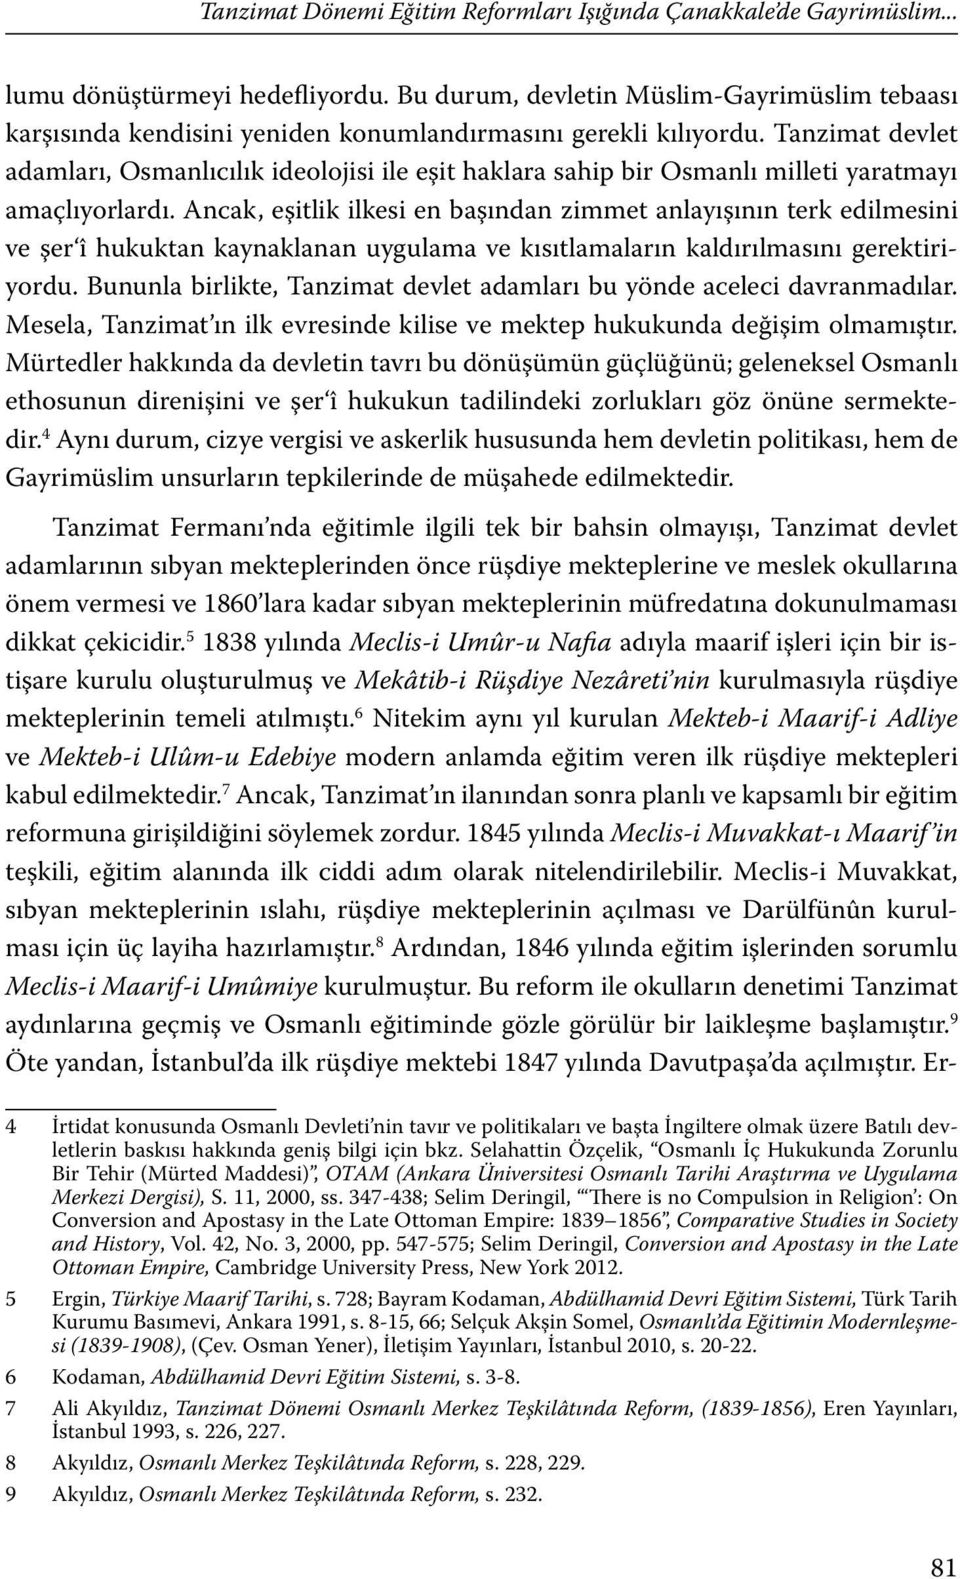 Tanzimat devlet adamları, Osmanlıcılık ideolojisi ile eşit haklara sahip bir Osmanlı milleti yaratmayı amaçlıyorlardı.